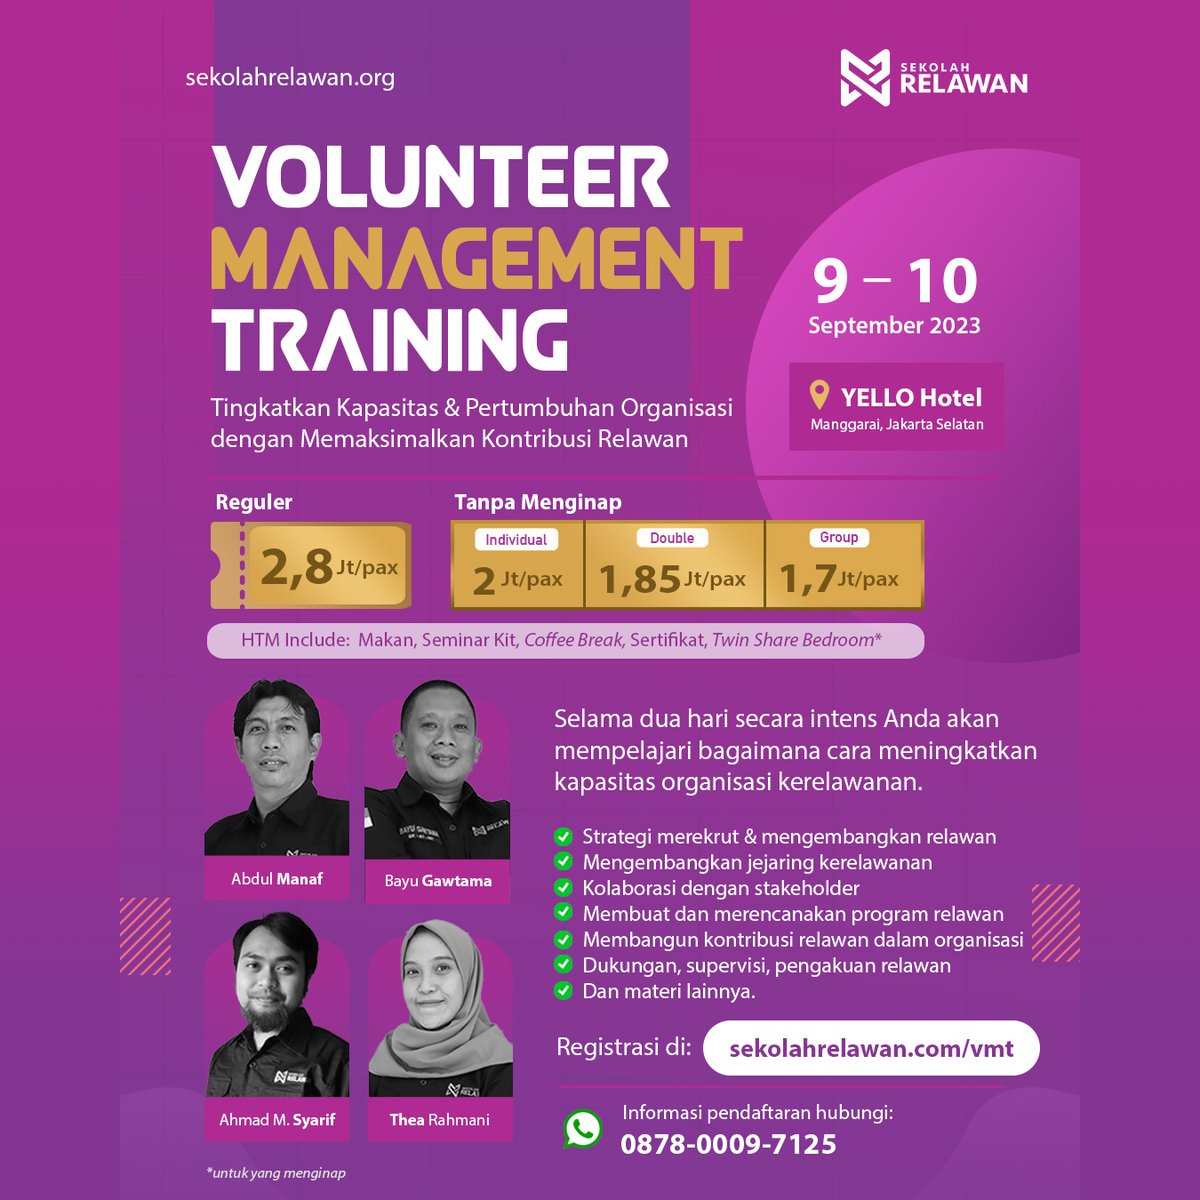 Tingkatkan kemampuanmu dalam dunia kerelawanan bersama kami di Volunteer Management Training! @sekolahrelawan

Ikuti Volunteer Management Training, 9-10 September 2023 di YELLO Hotel, Jakarta Selatan. Hubungi: 0878-0009-7125

#VolunteerTraining #KerelawananIndonesia